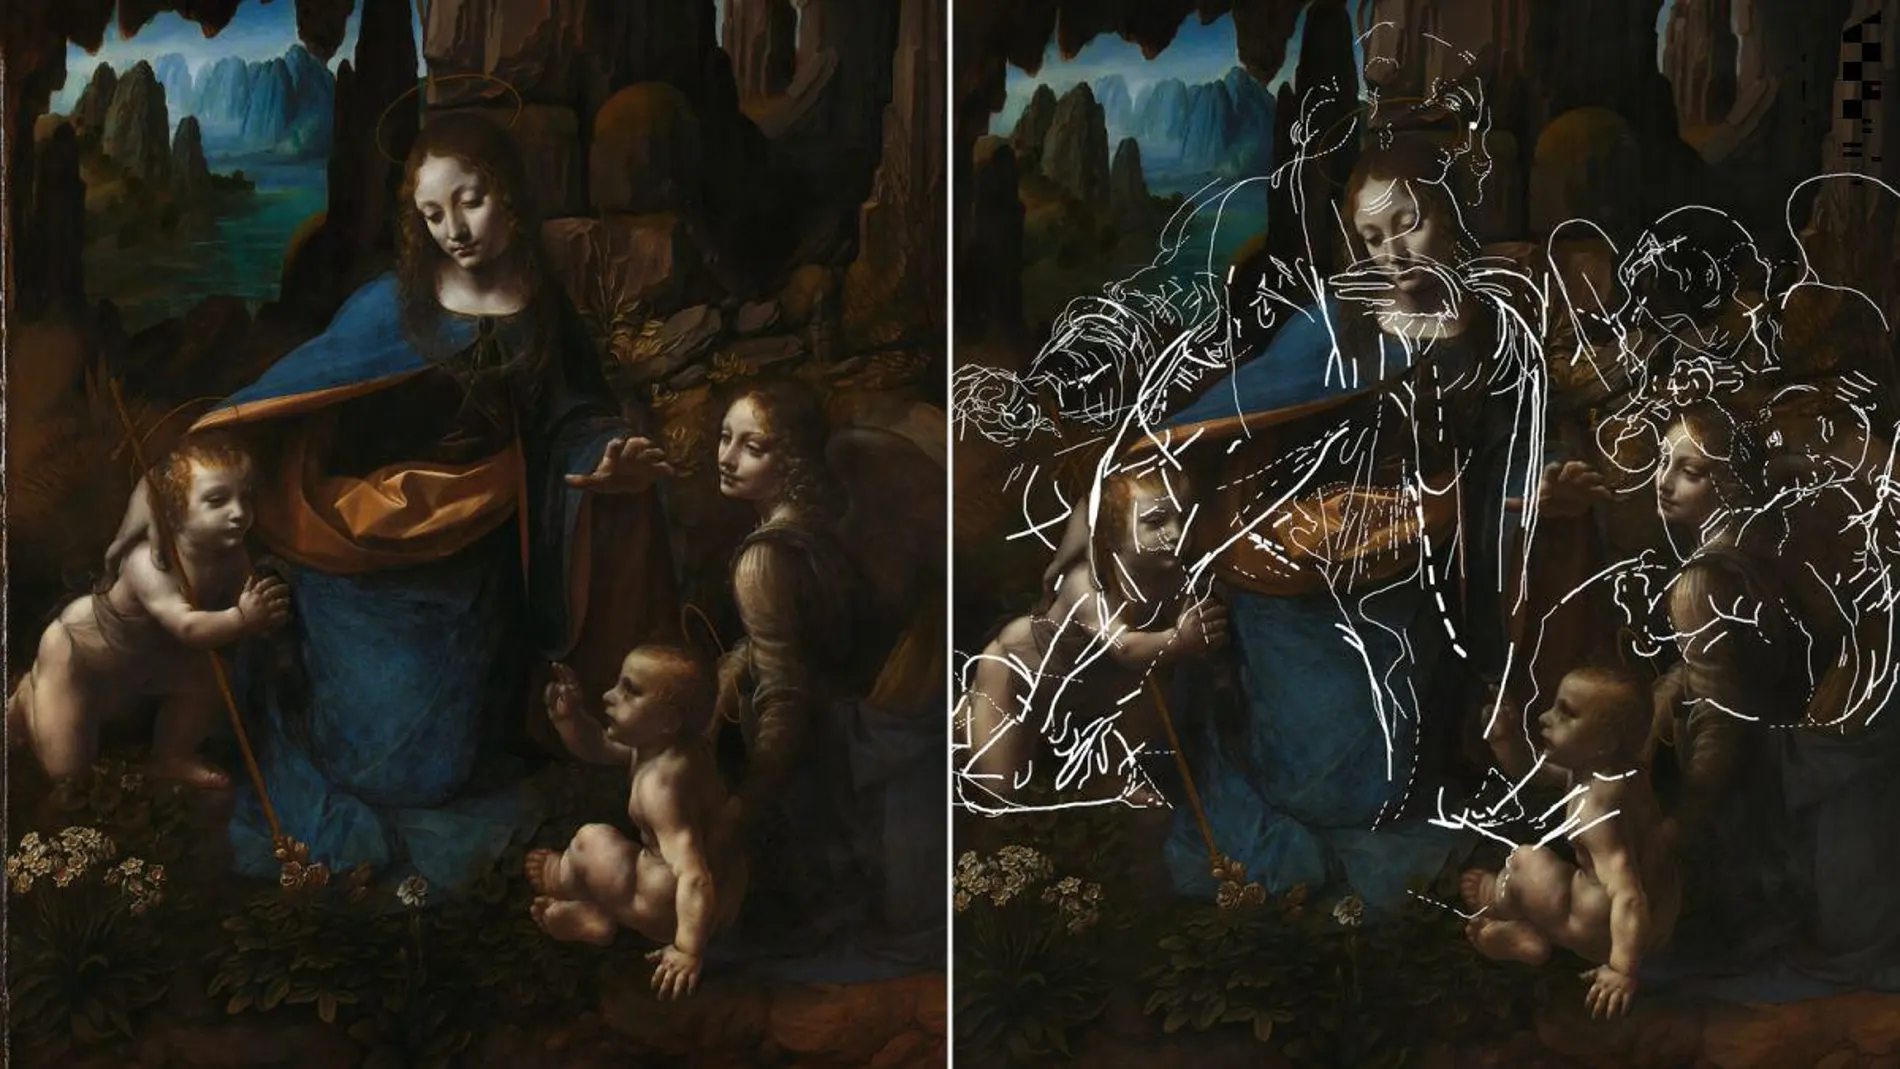 El famoso cuadro "La Virgen de las Rocas"pintado por Leonardo en 1483